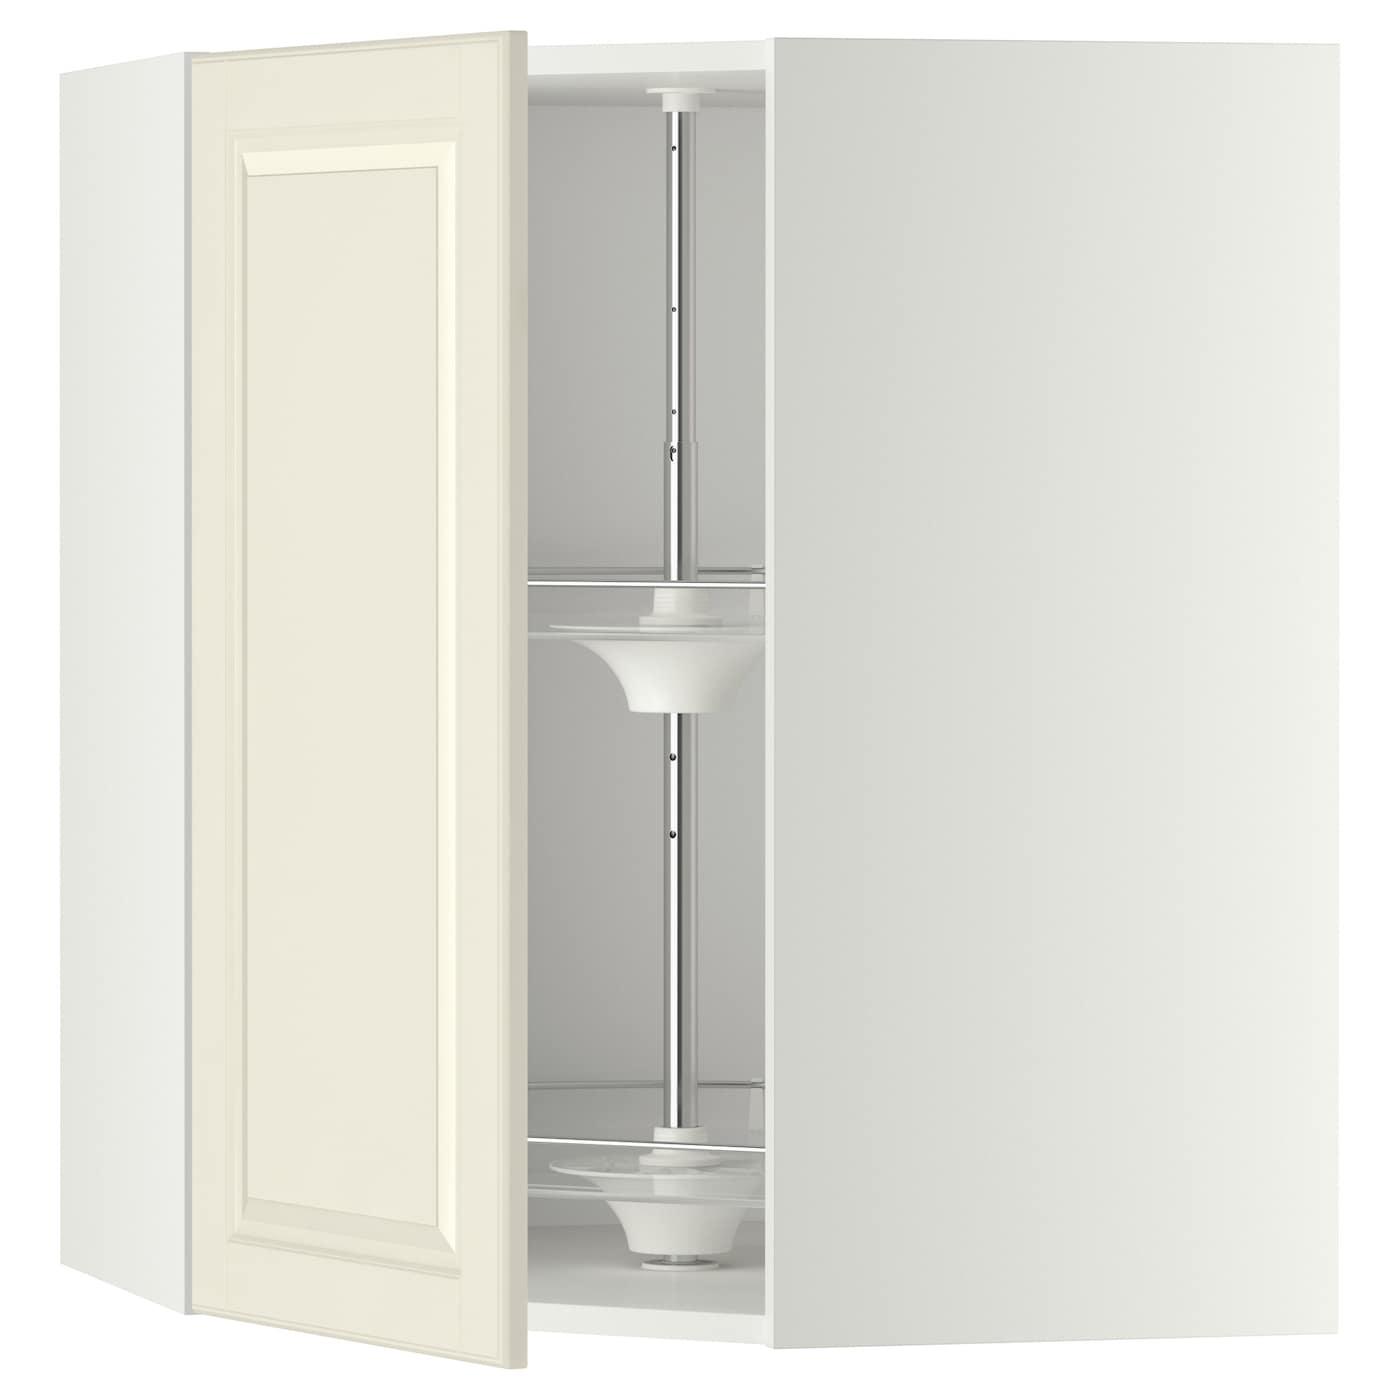 Угловой навесной шкаф с каруселью - METOD  IKEA/  МЕТОД ИКЕА, 80х68 см, белый/кремовый